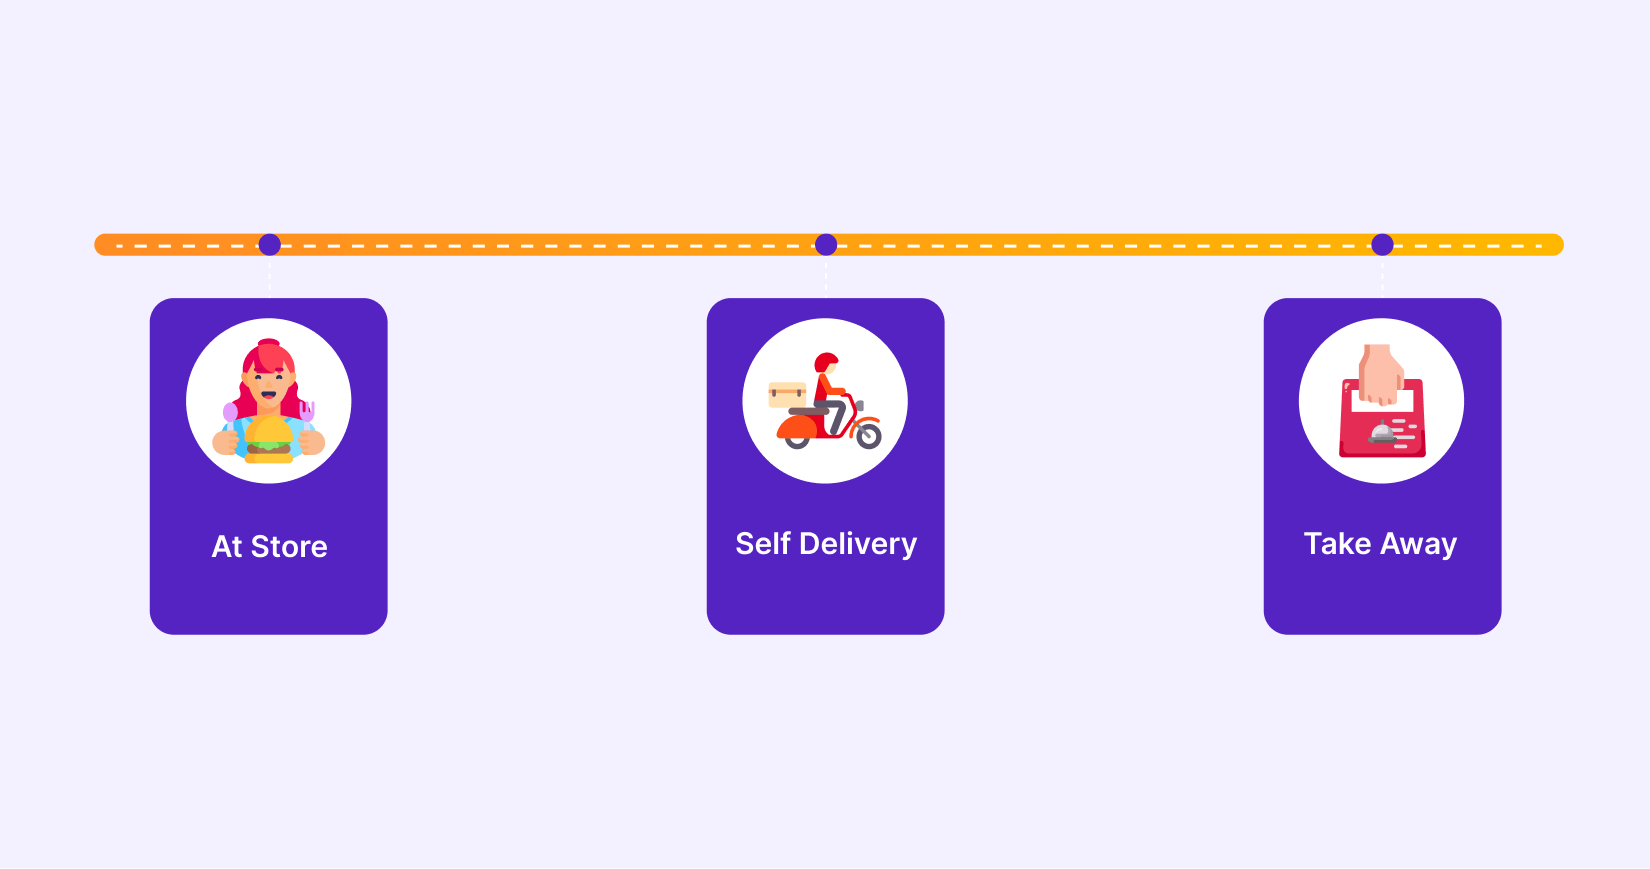 Diverse order delivery methods